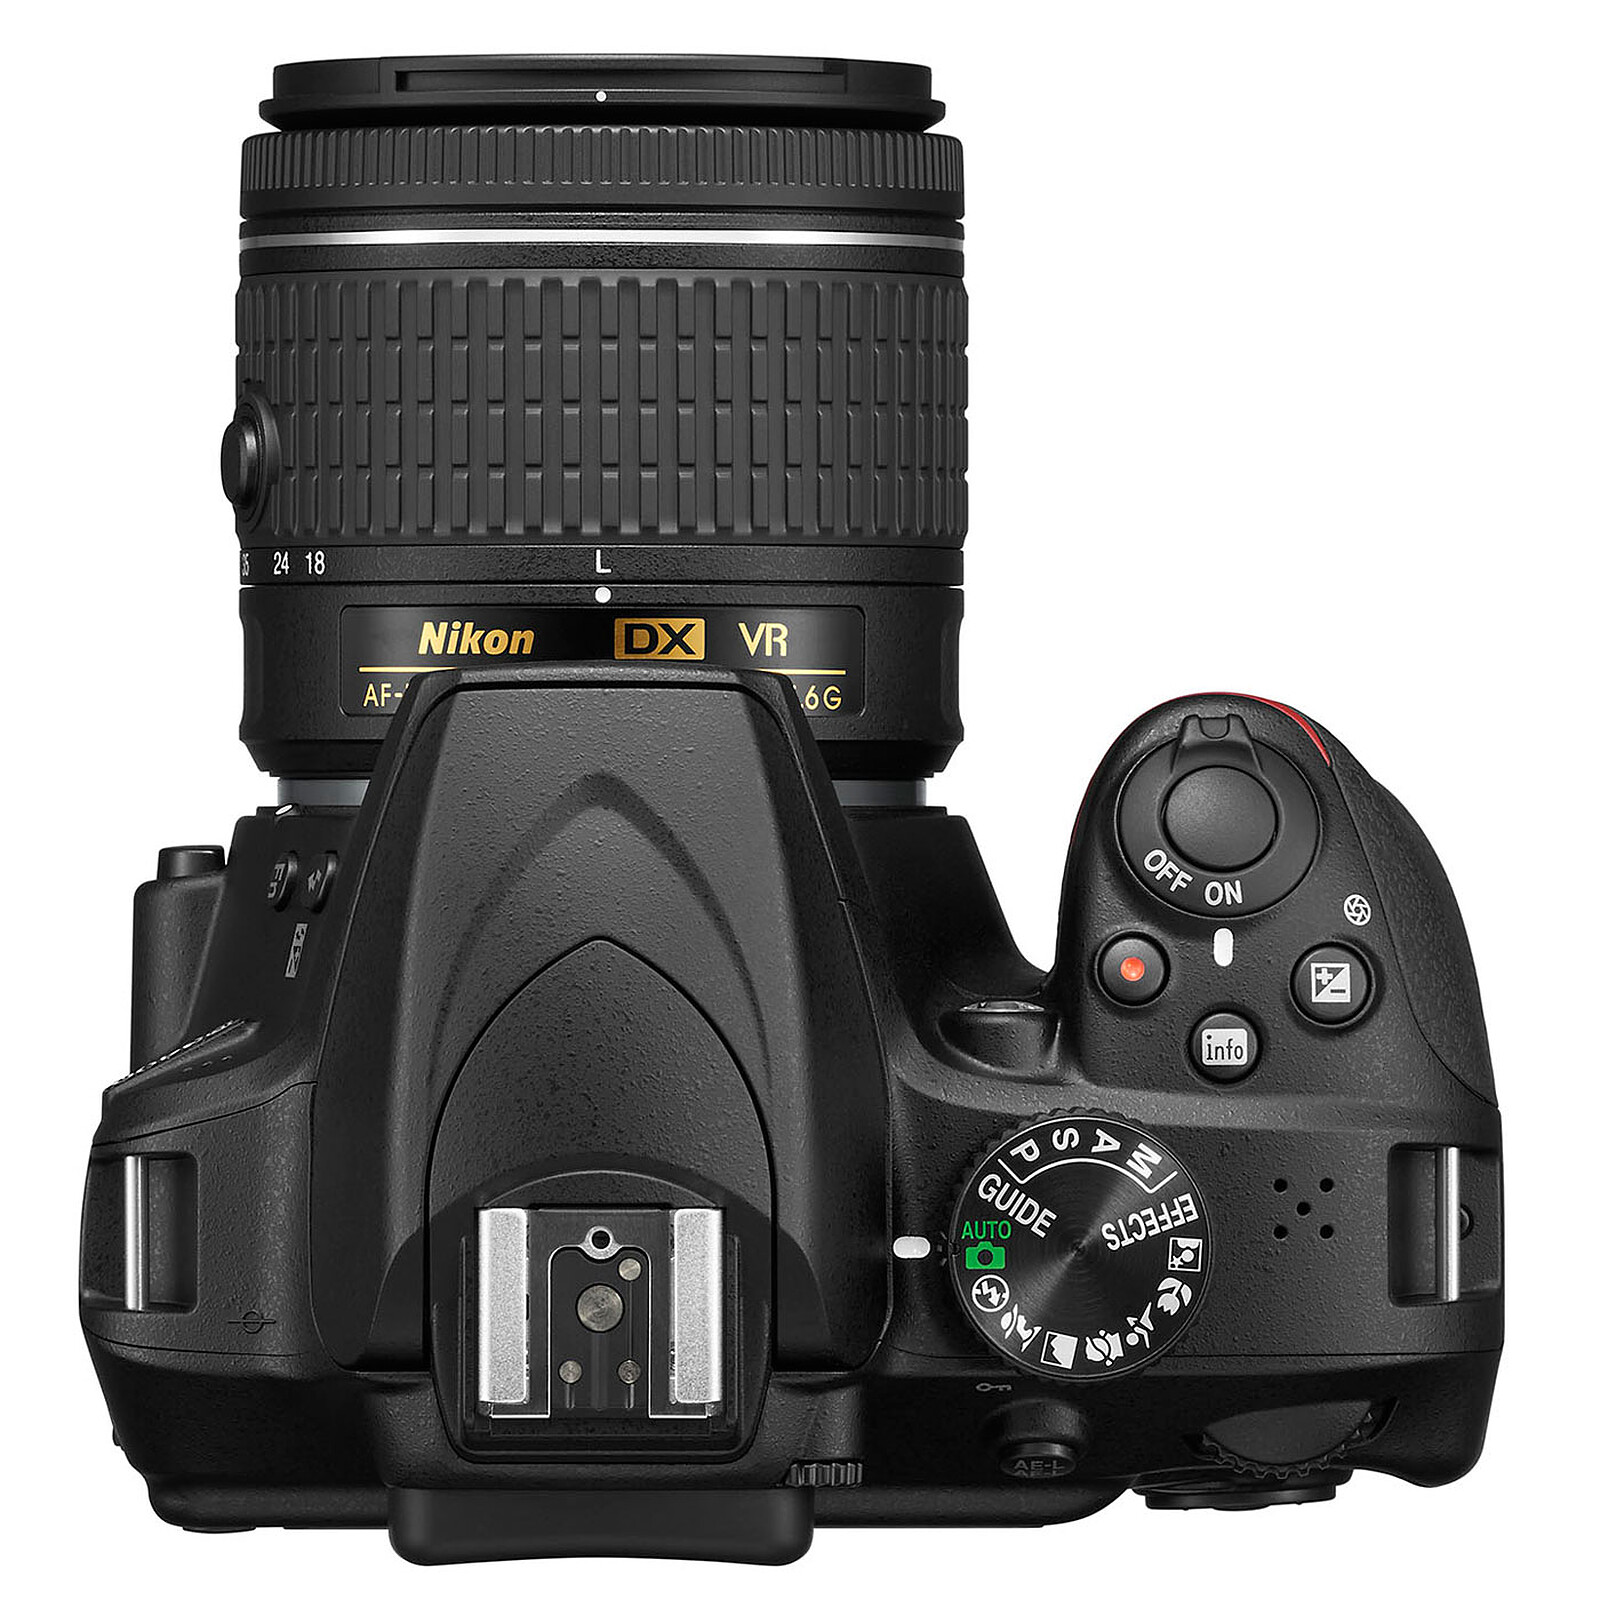 Nikon ME-1 - Micro appareil photo - Garantie 3 ans LDLC